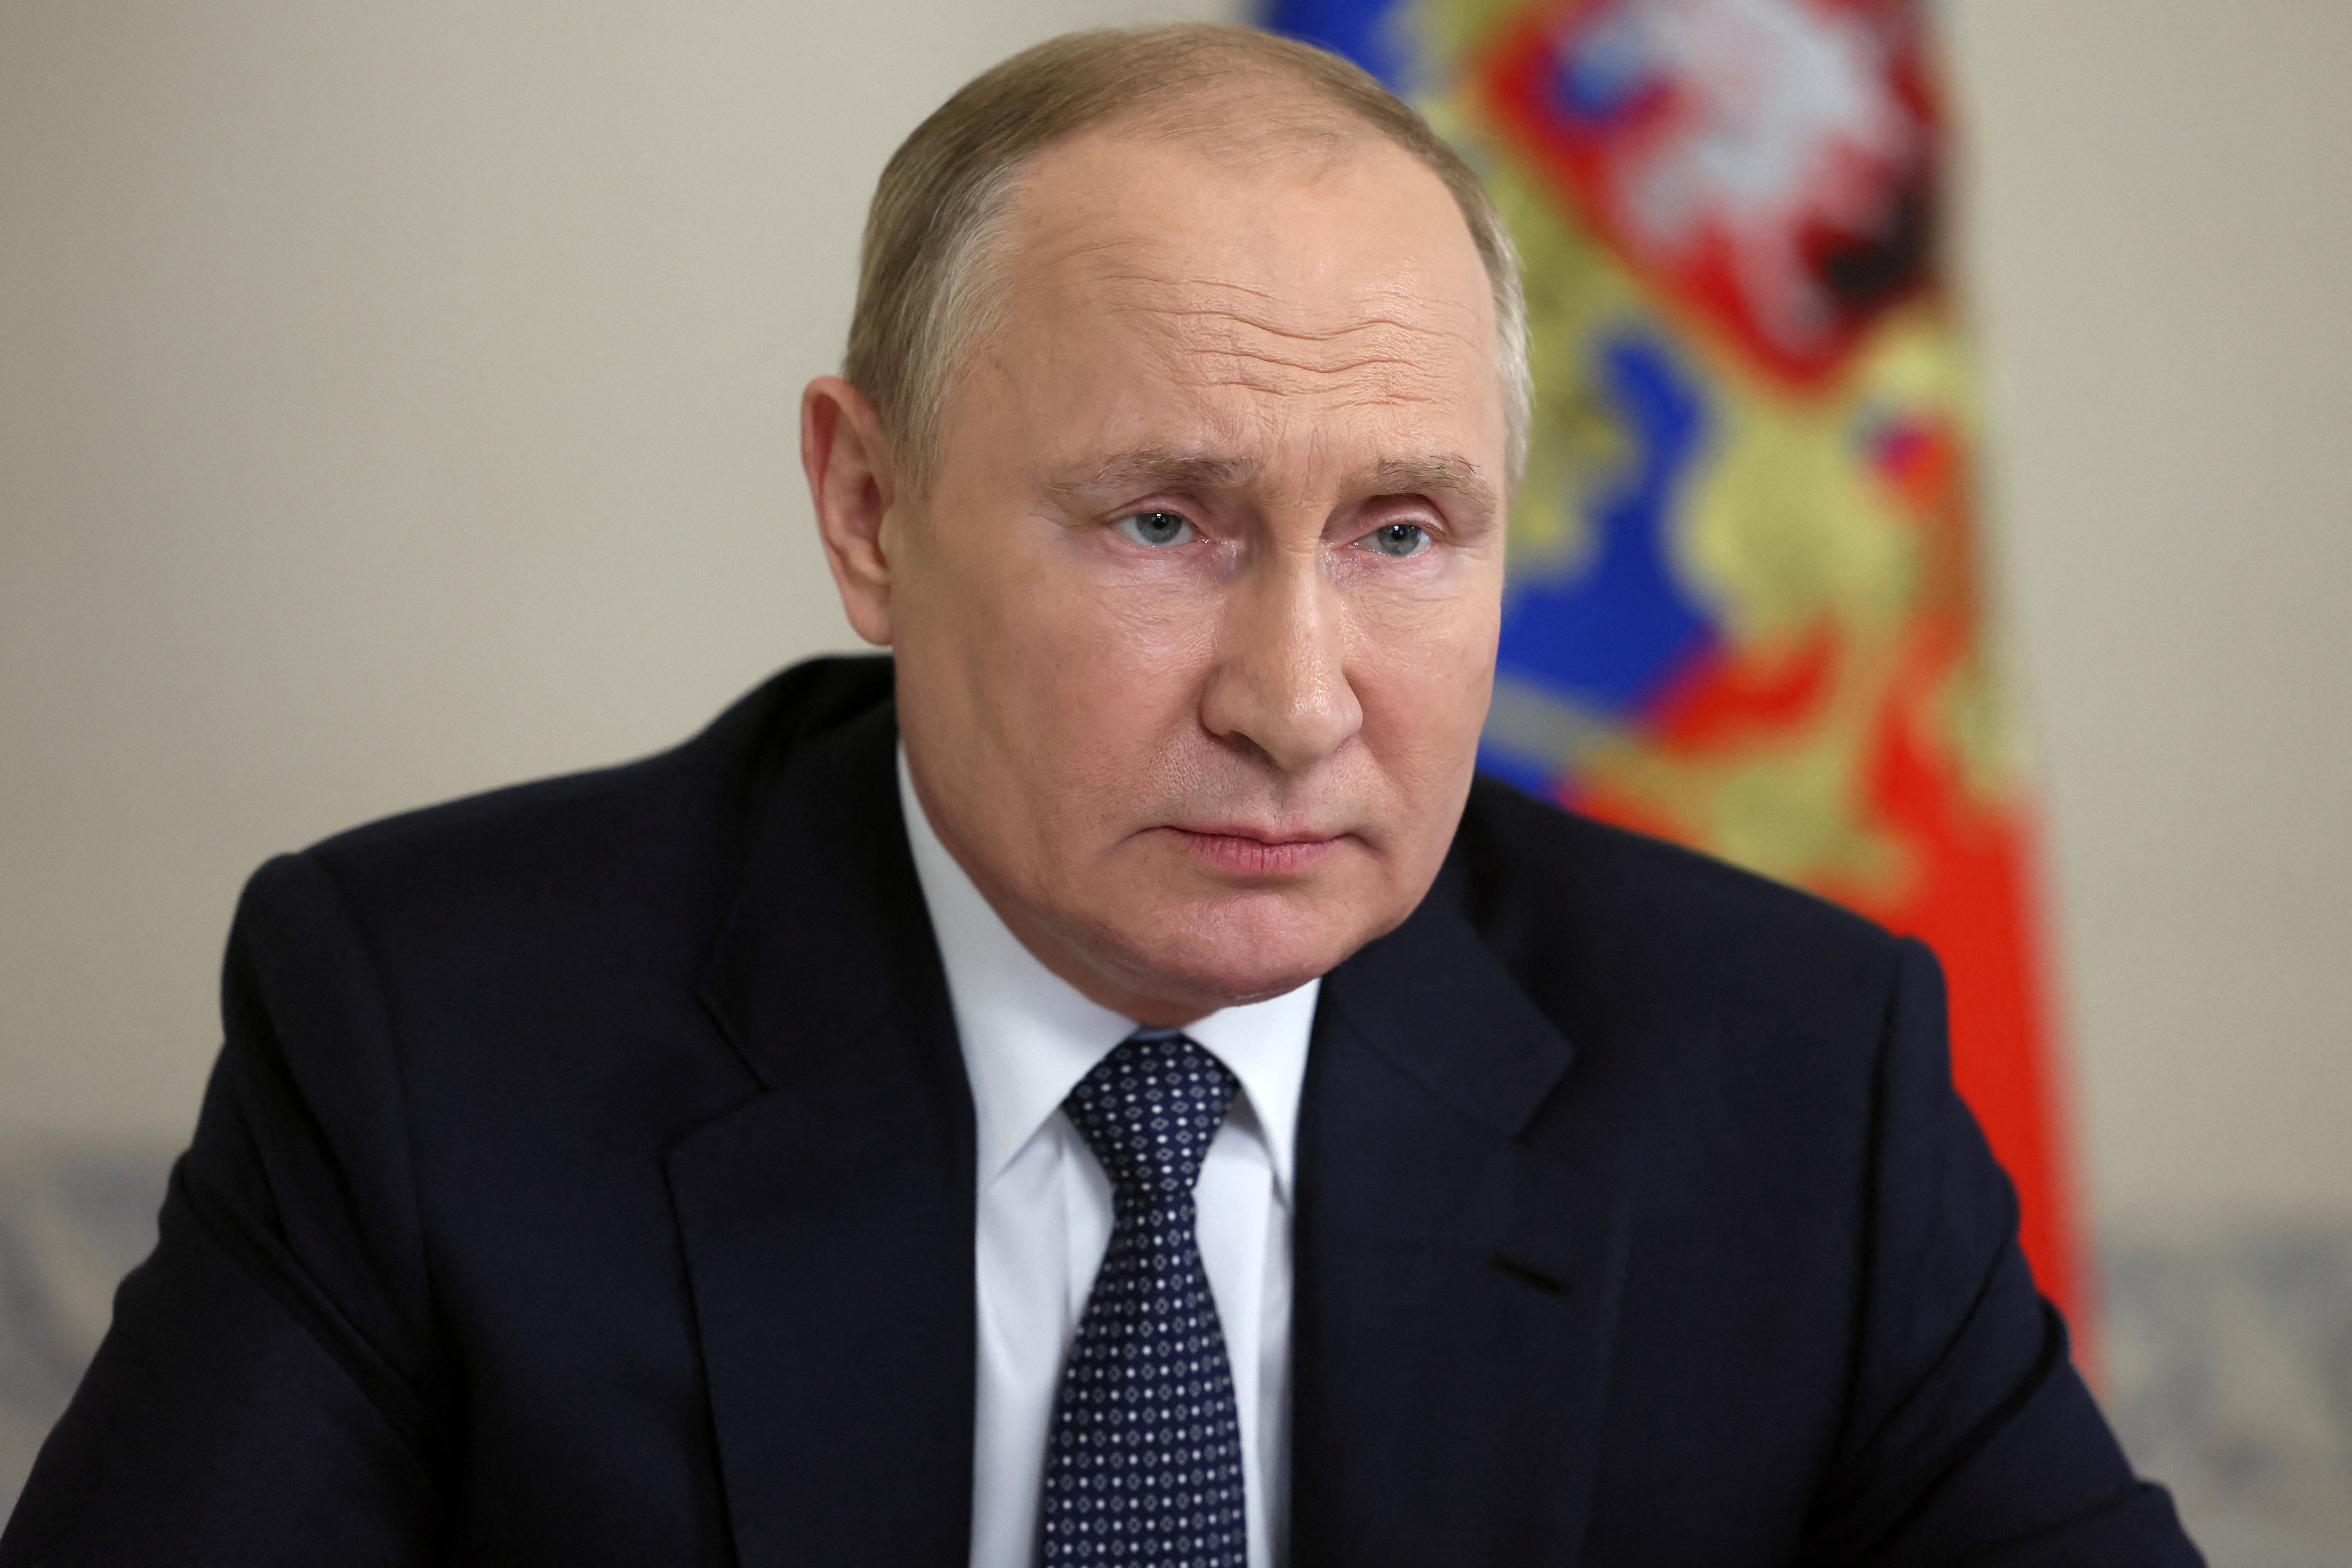 El presidente ruso, Vladímir Putin, preside una reunión con los miembros del Consejo de Seguridad a través de una videoconferencia en Moscú, Rusia, el 22 de junio de 2022. Sputnik/Mikhail Metzel/Kremlin vía REUTERS